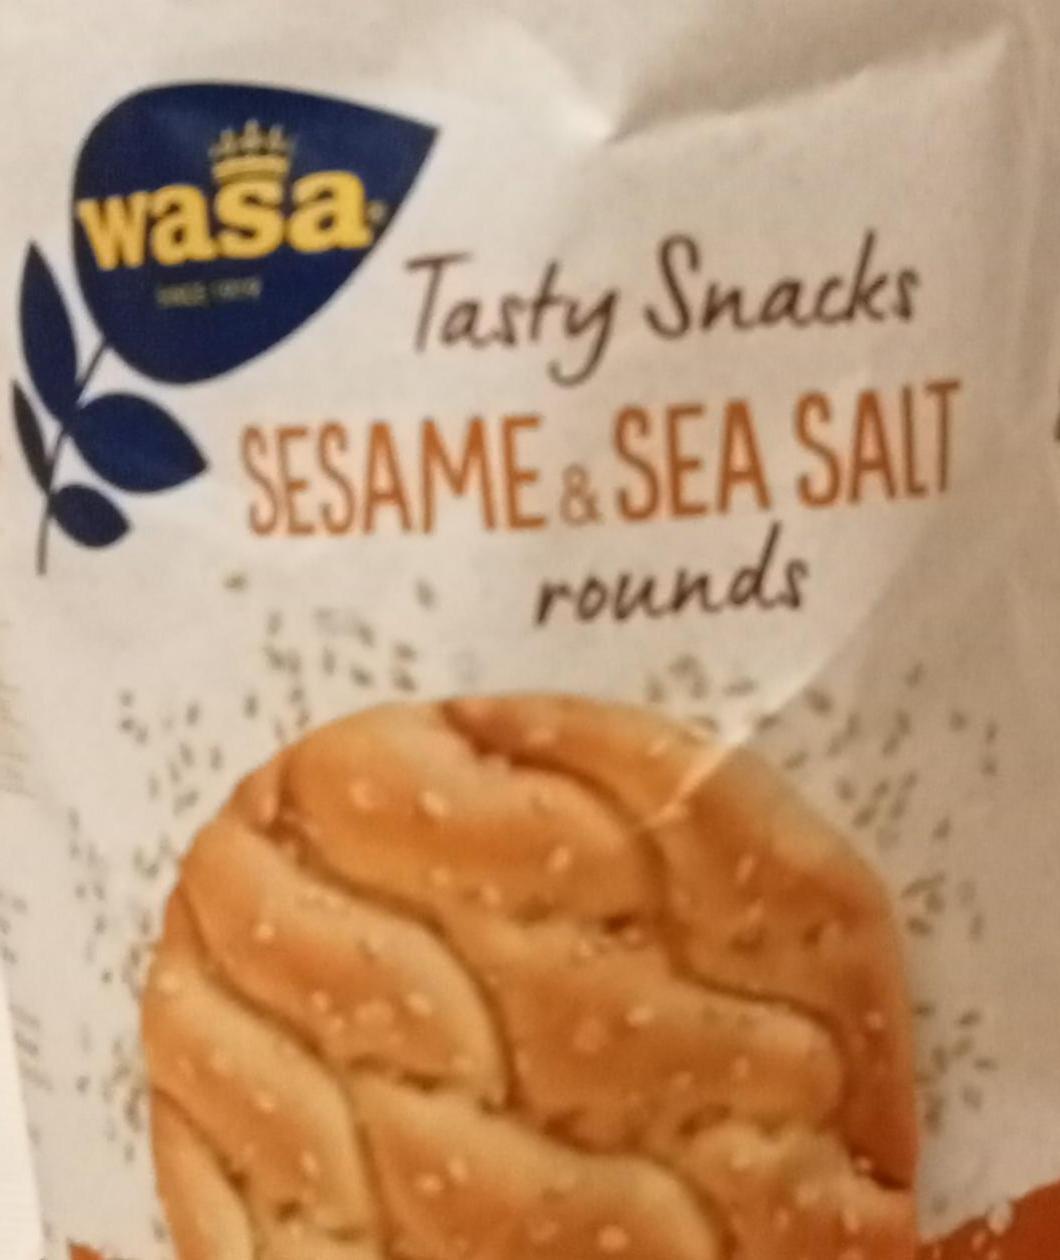 Фото - Хлібці хрусткі Sesame•sea Salt rounds Wasa